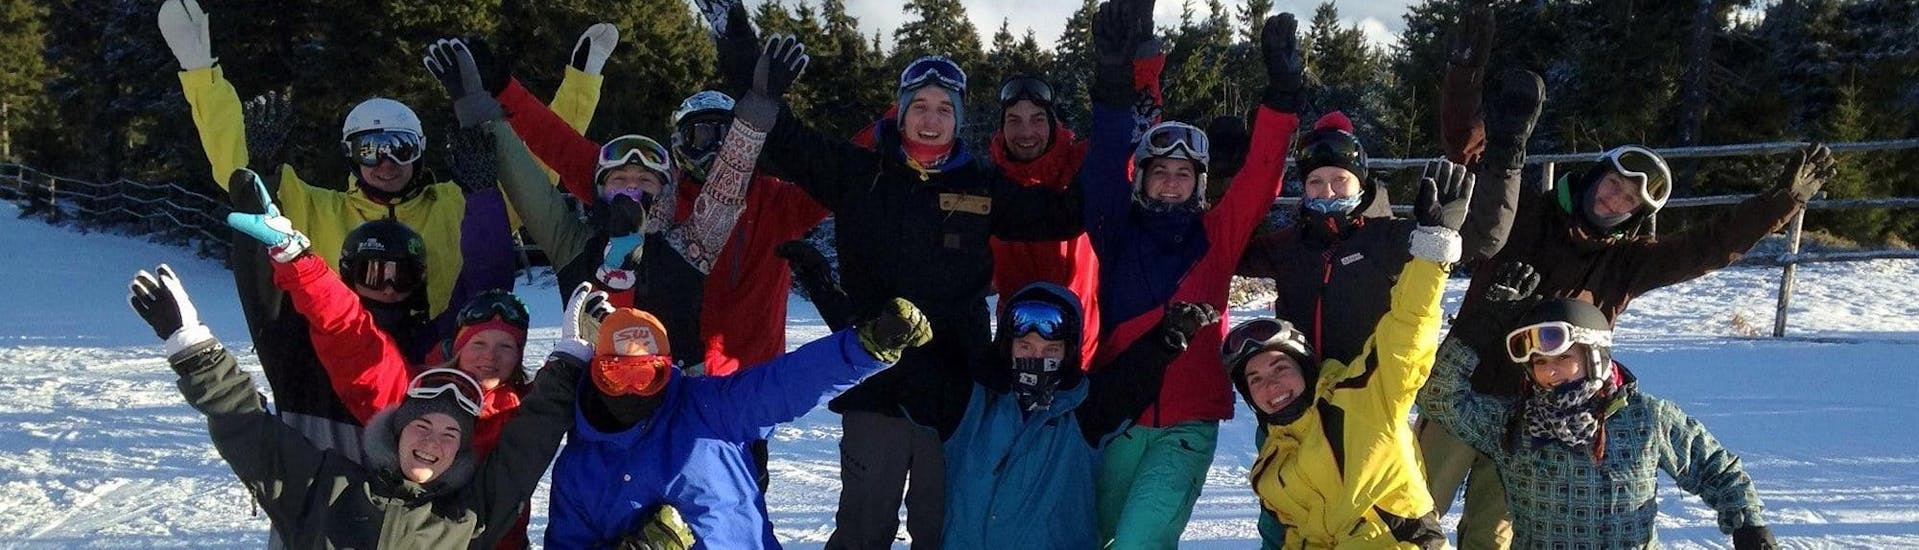 Snowboardkurs für Erwachsene - Gruppenunterricht.